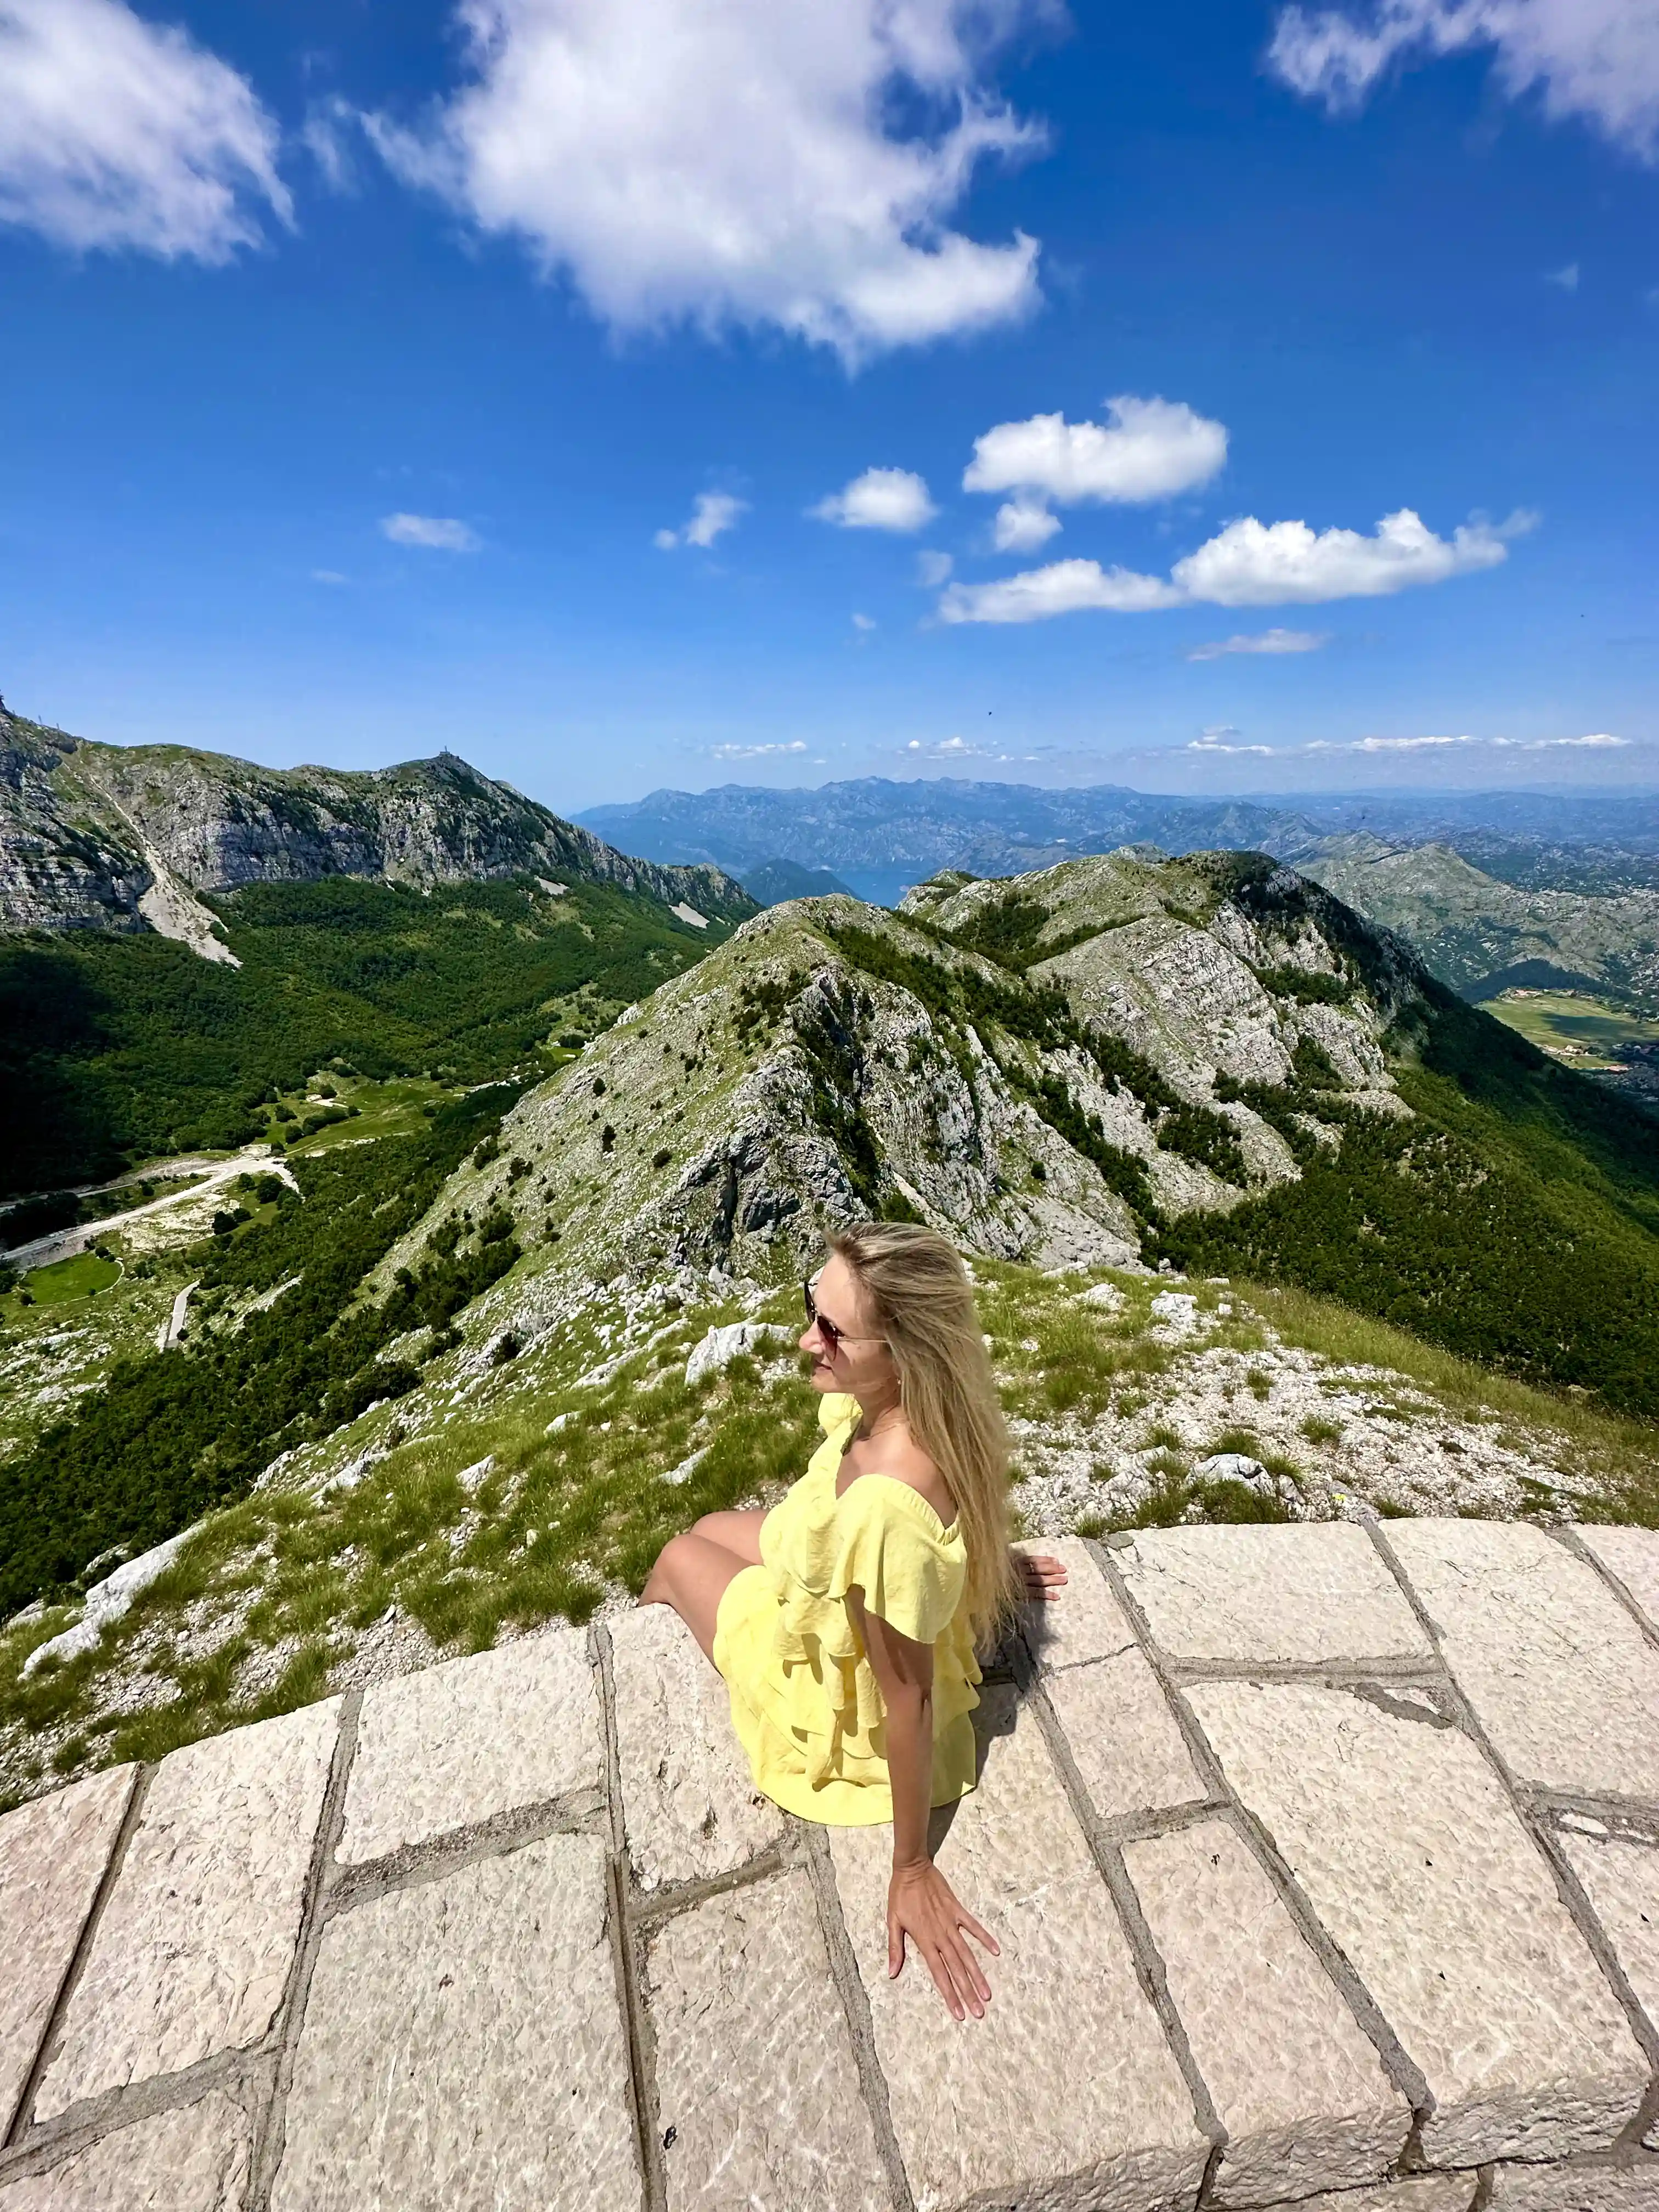 Imagine Lovcen National Park in Montenegro